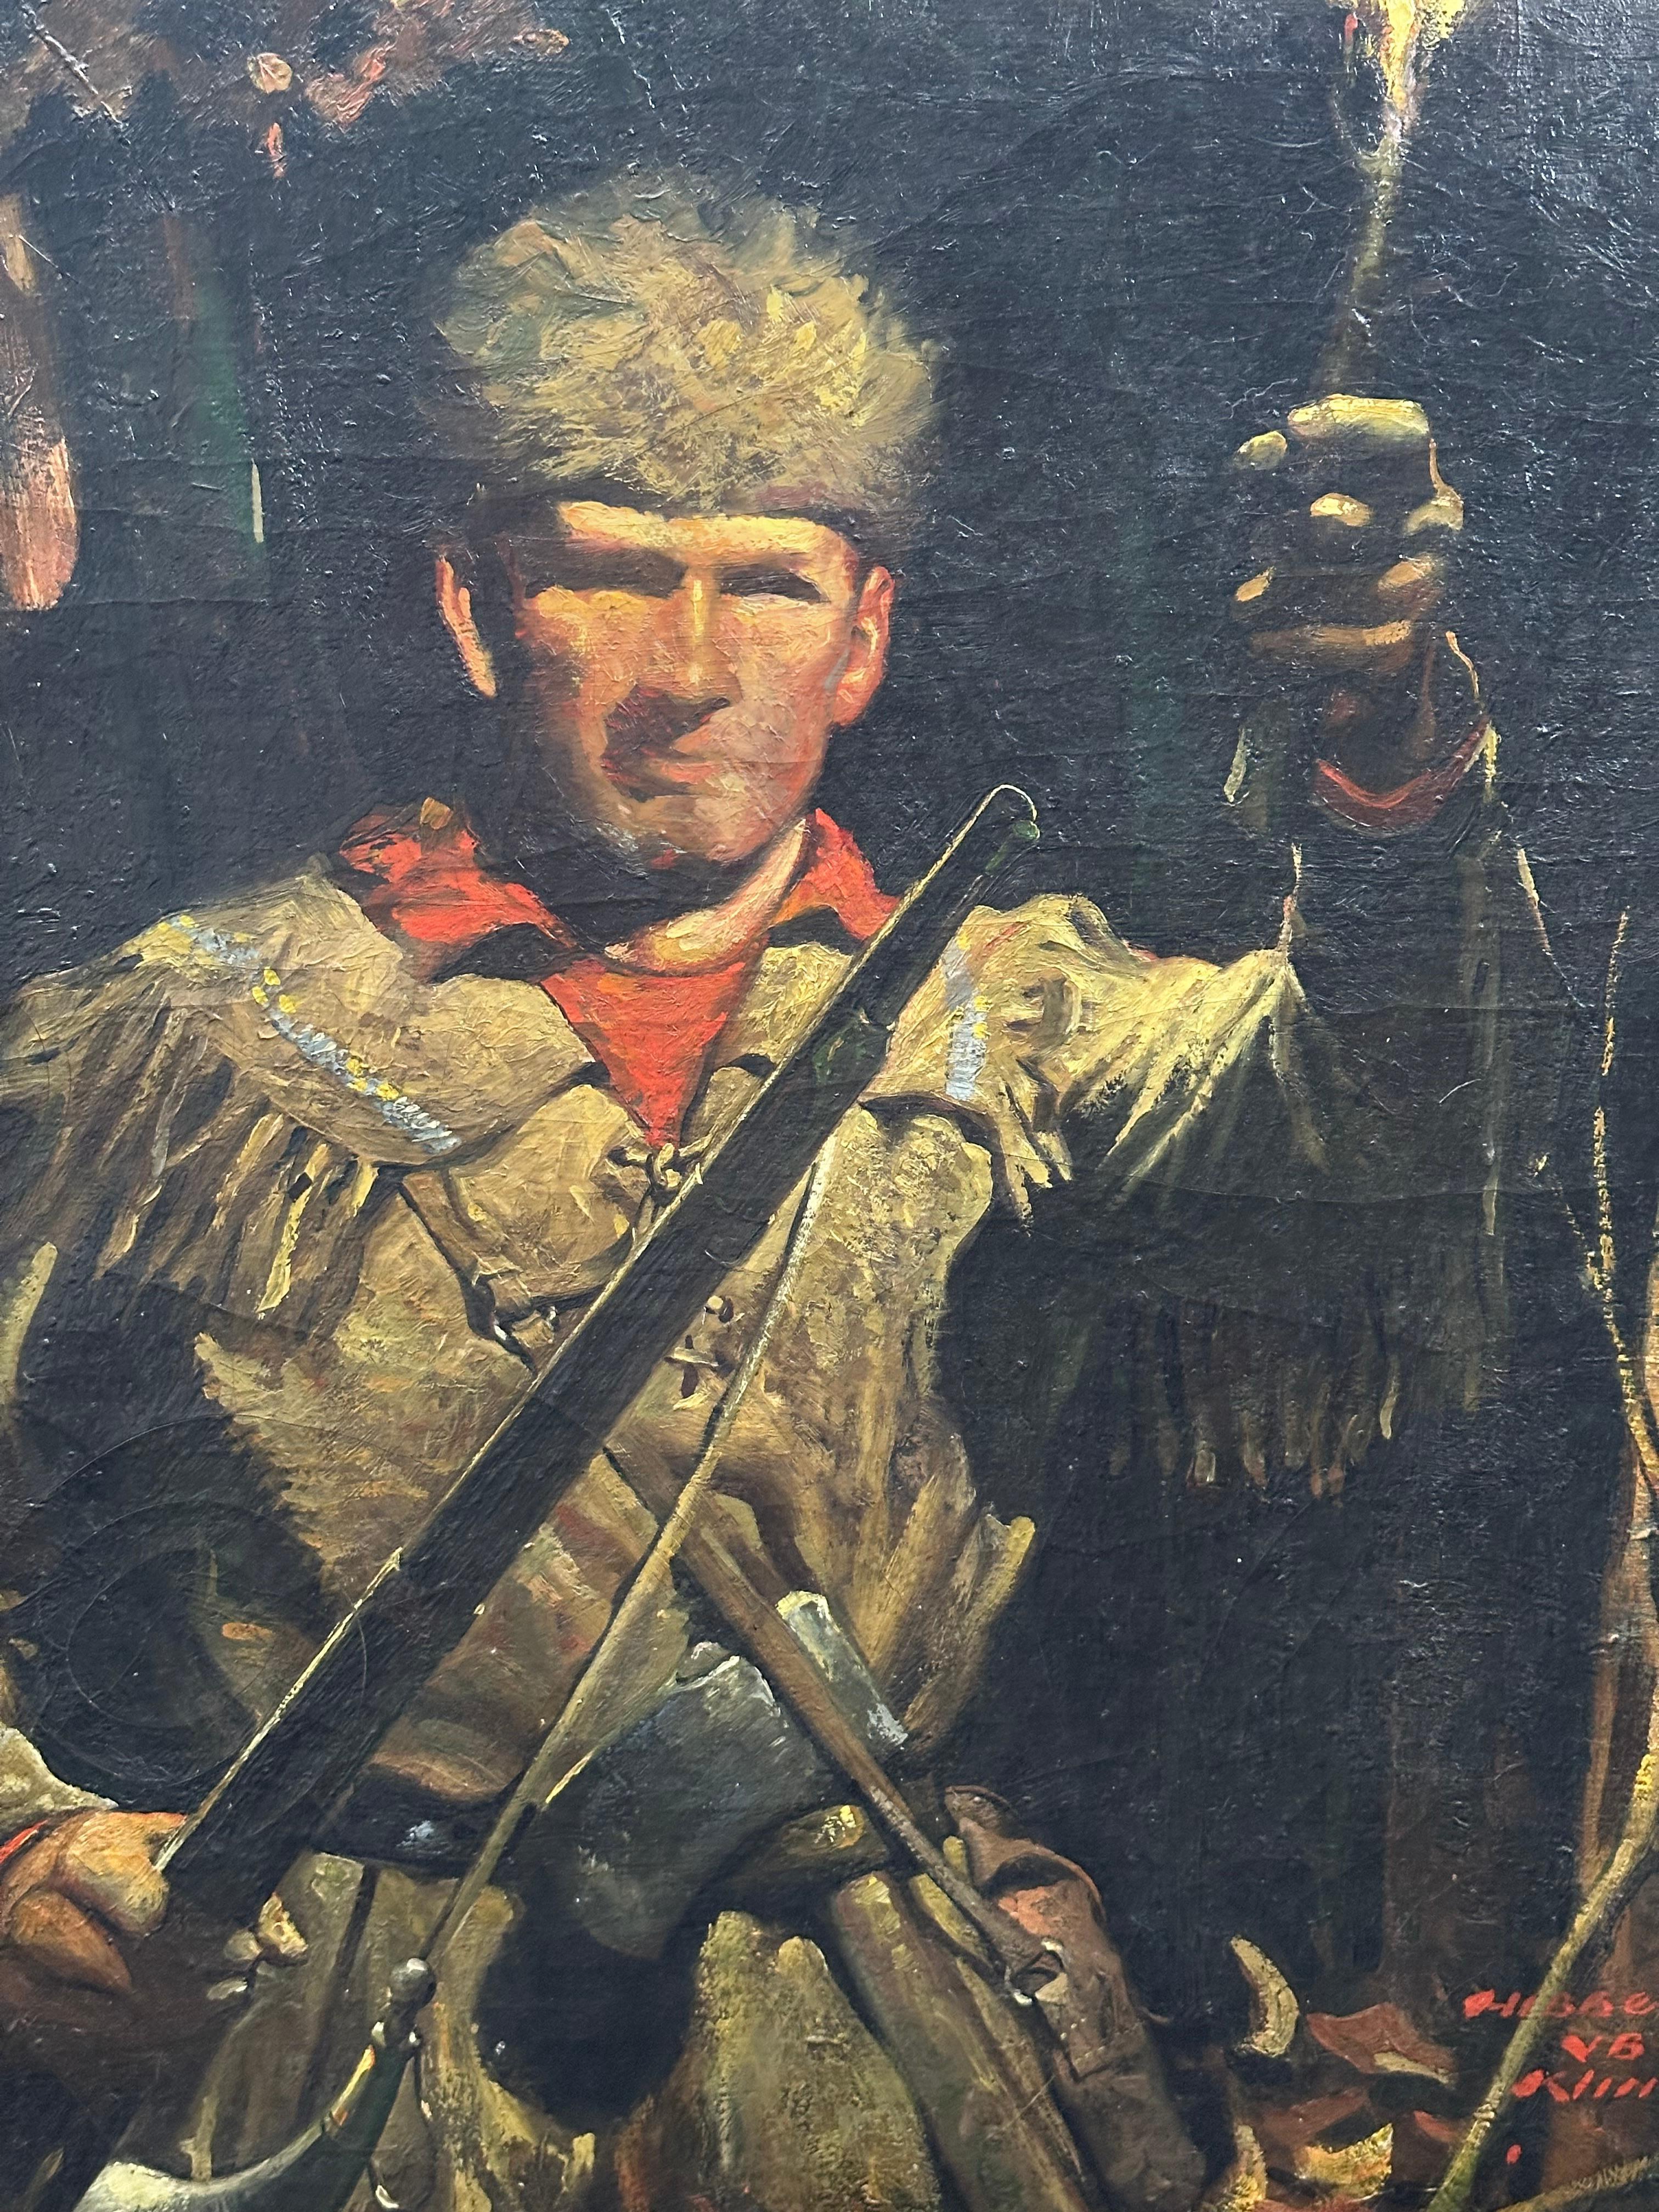 Frontiersman Davy Crockett Golden Age Illustration painting - Painting by Hibberd Van Buren Kline